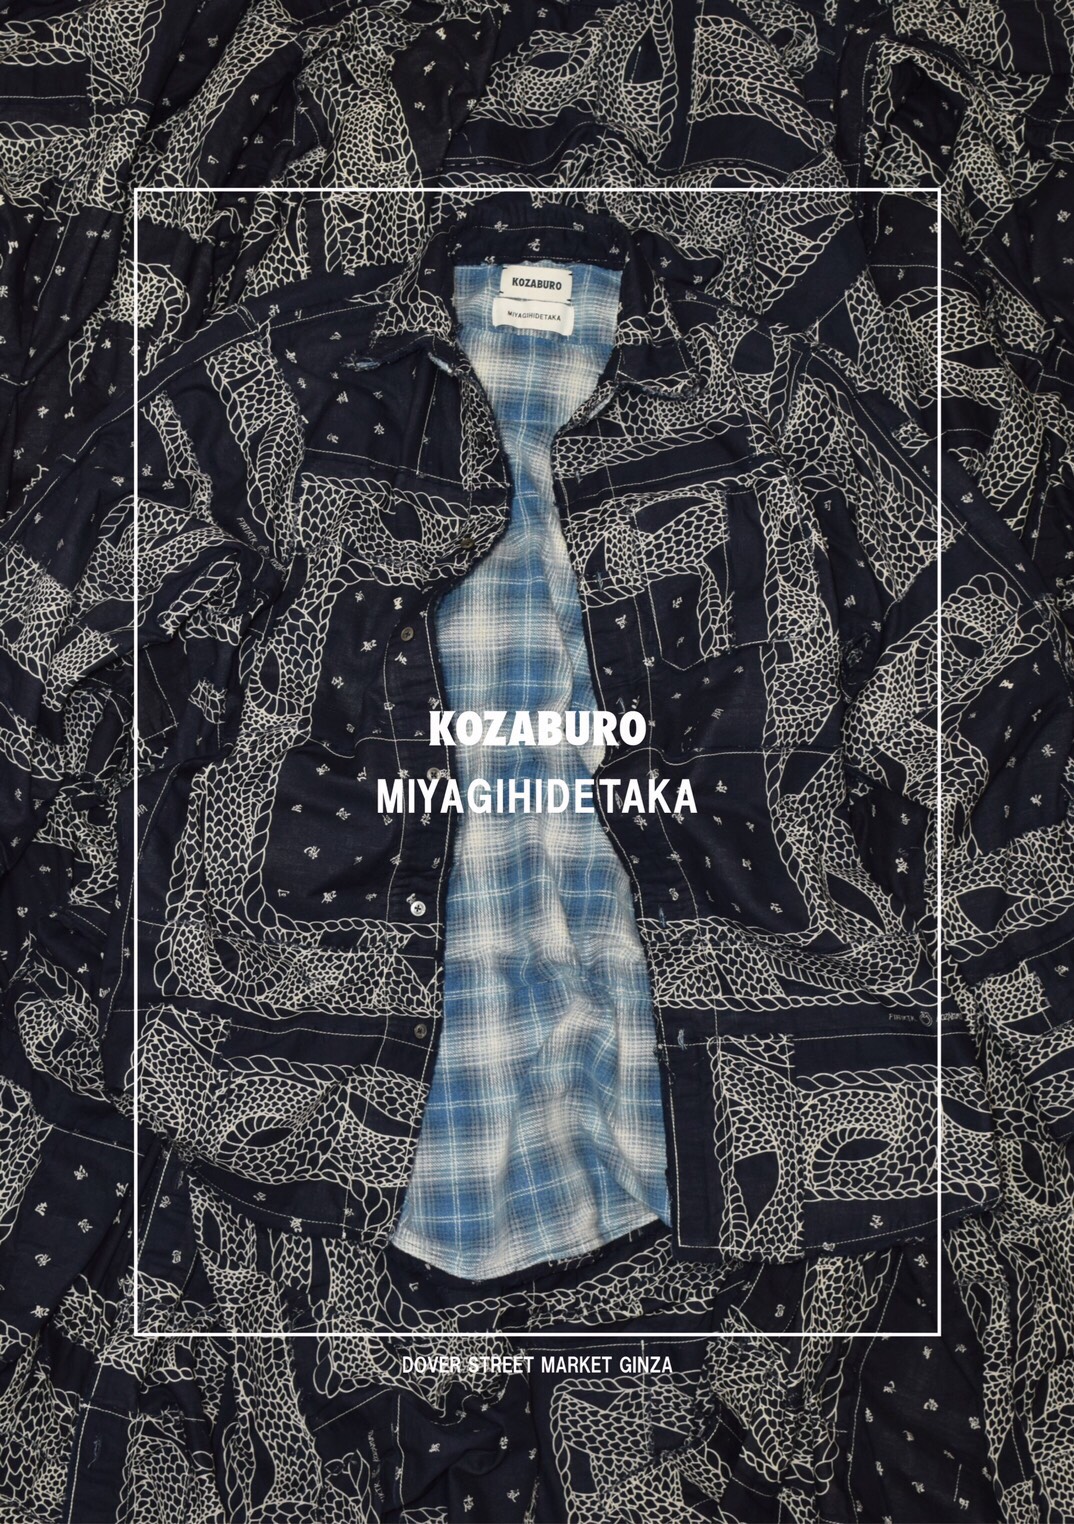 KOZABURO × MIYAGIHIDETAKAのシャツがDOVER STREET MARKET GINZAで発売中